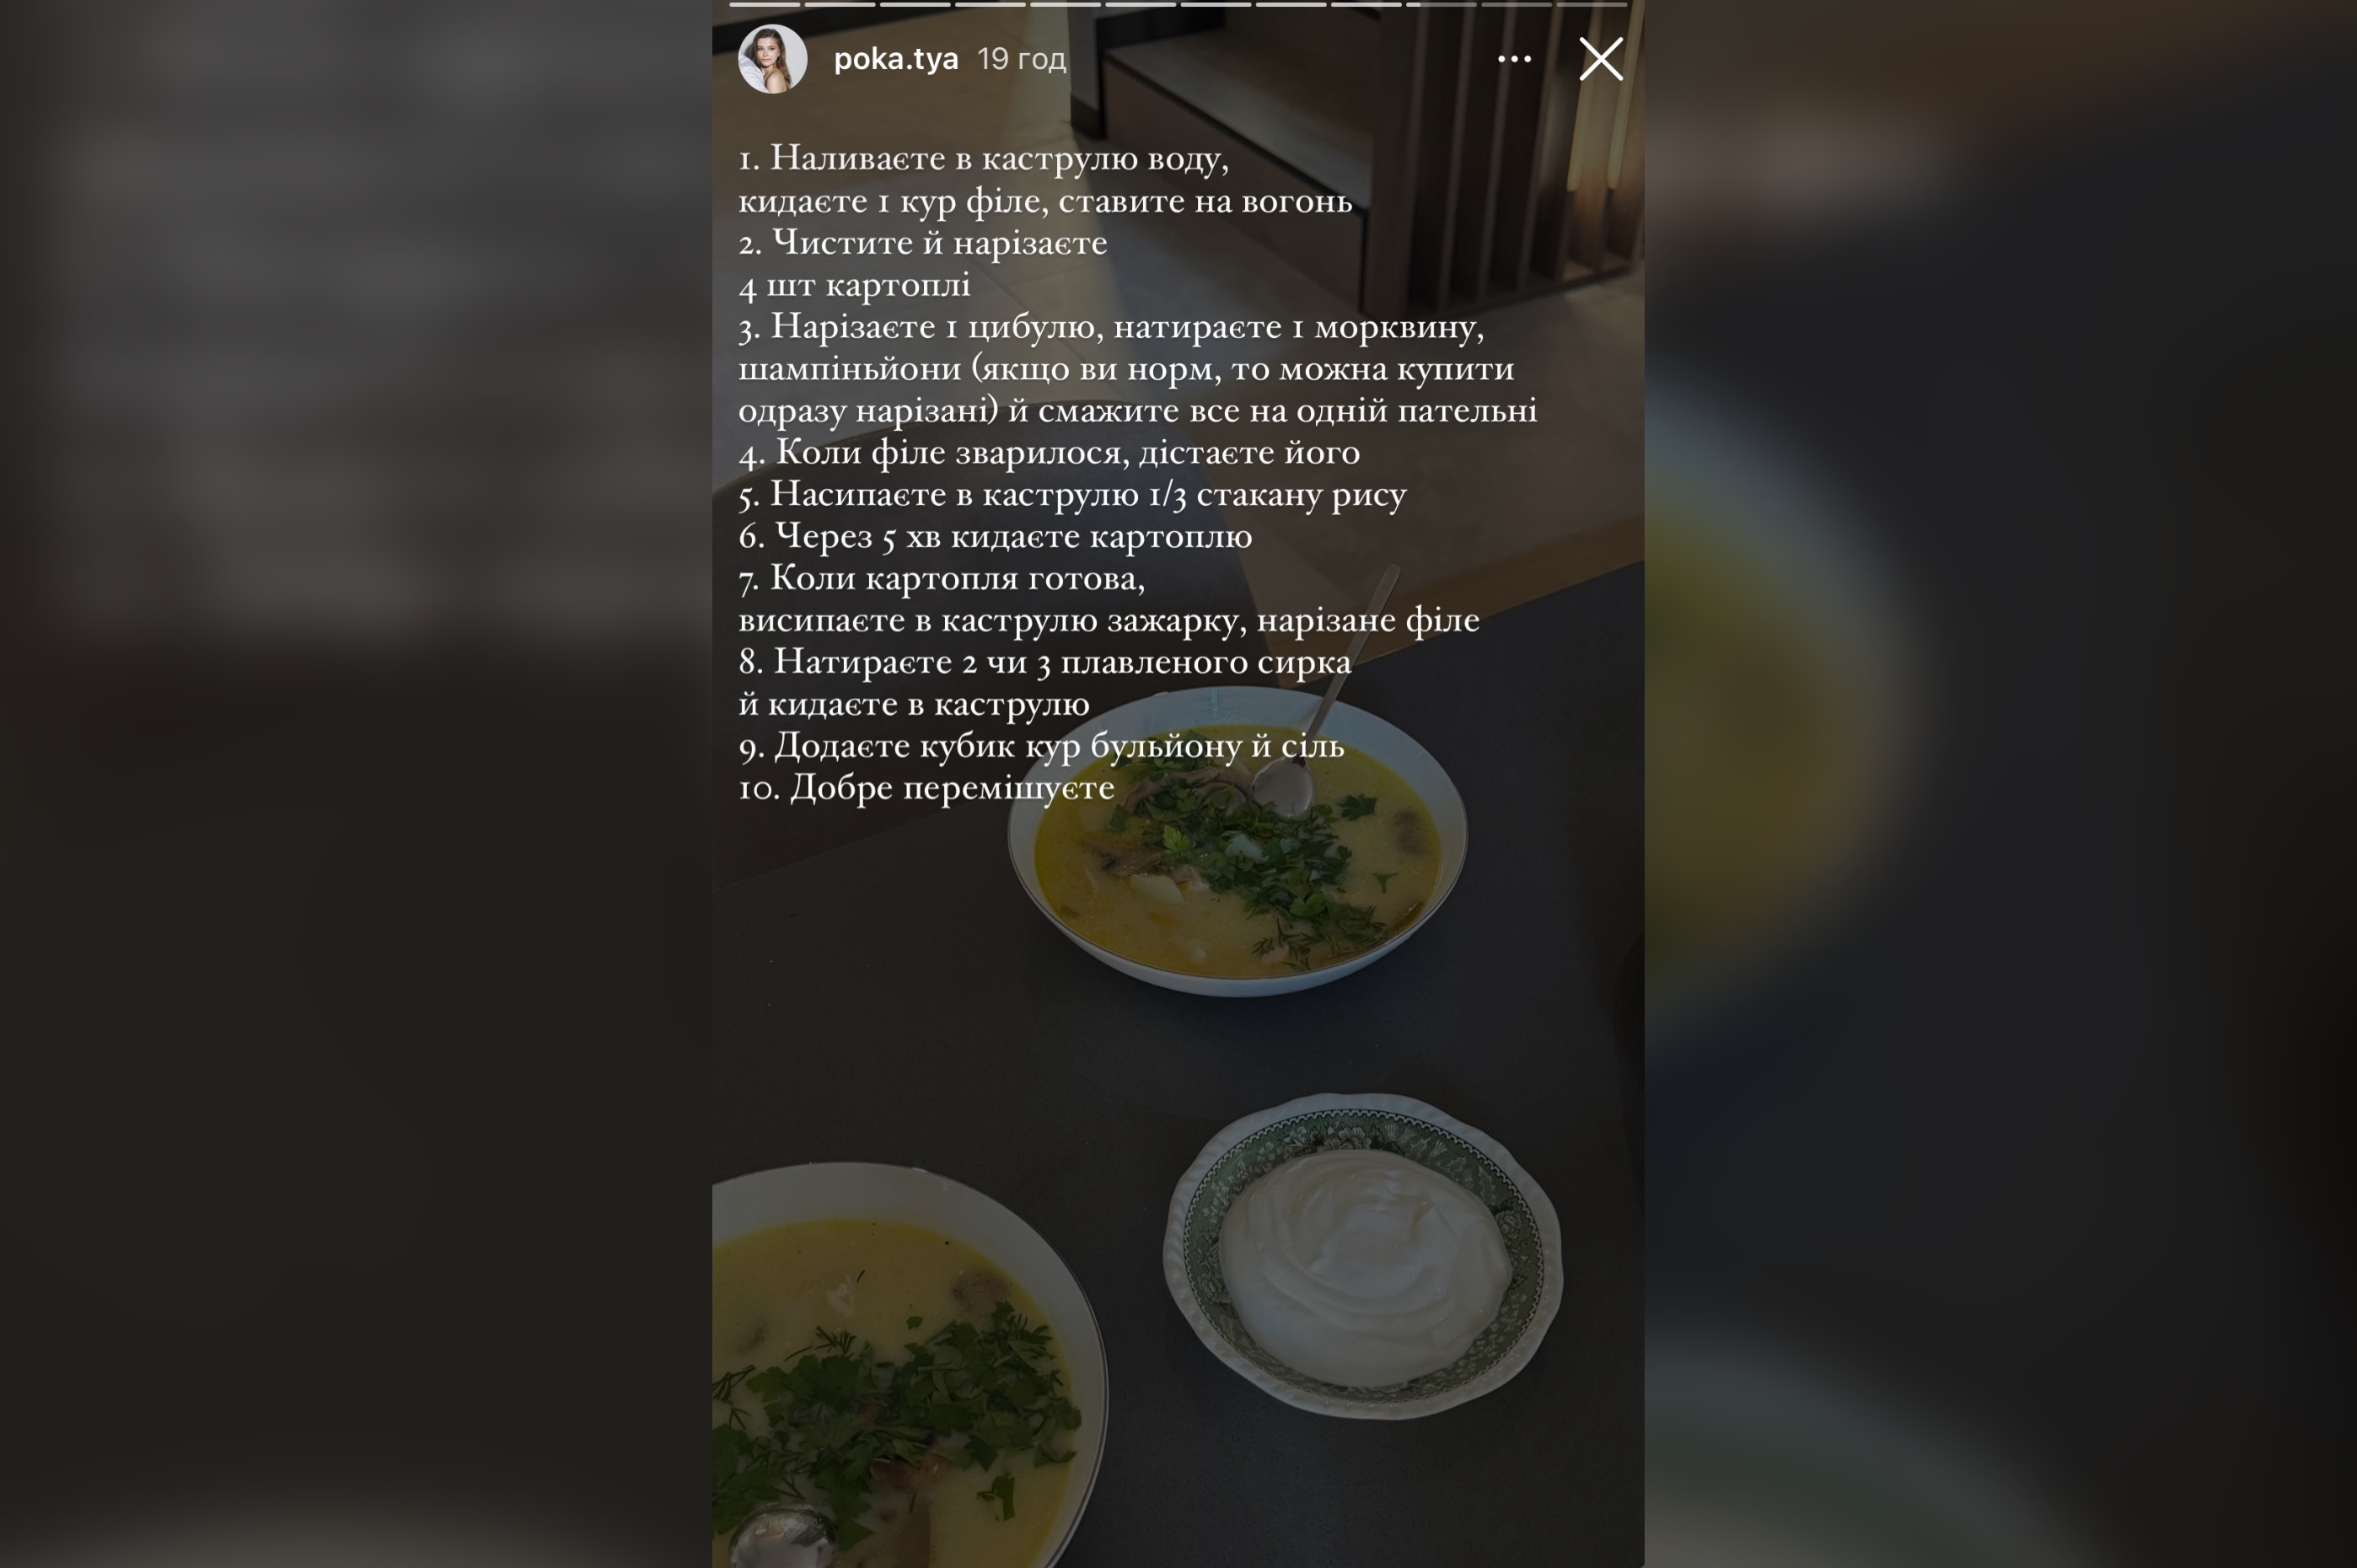 Молода дружина Володимира Остапчука поділилась рецептом супу з плавленим сирком. Фото з Instagram @poka.tya